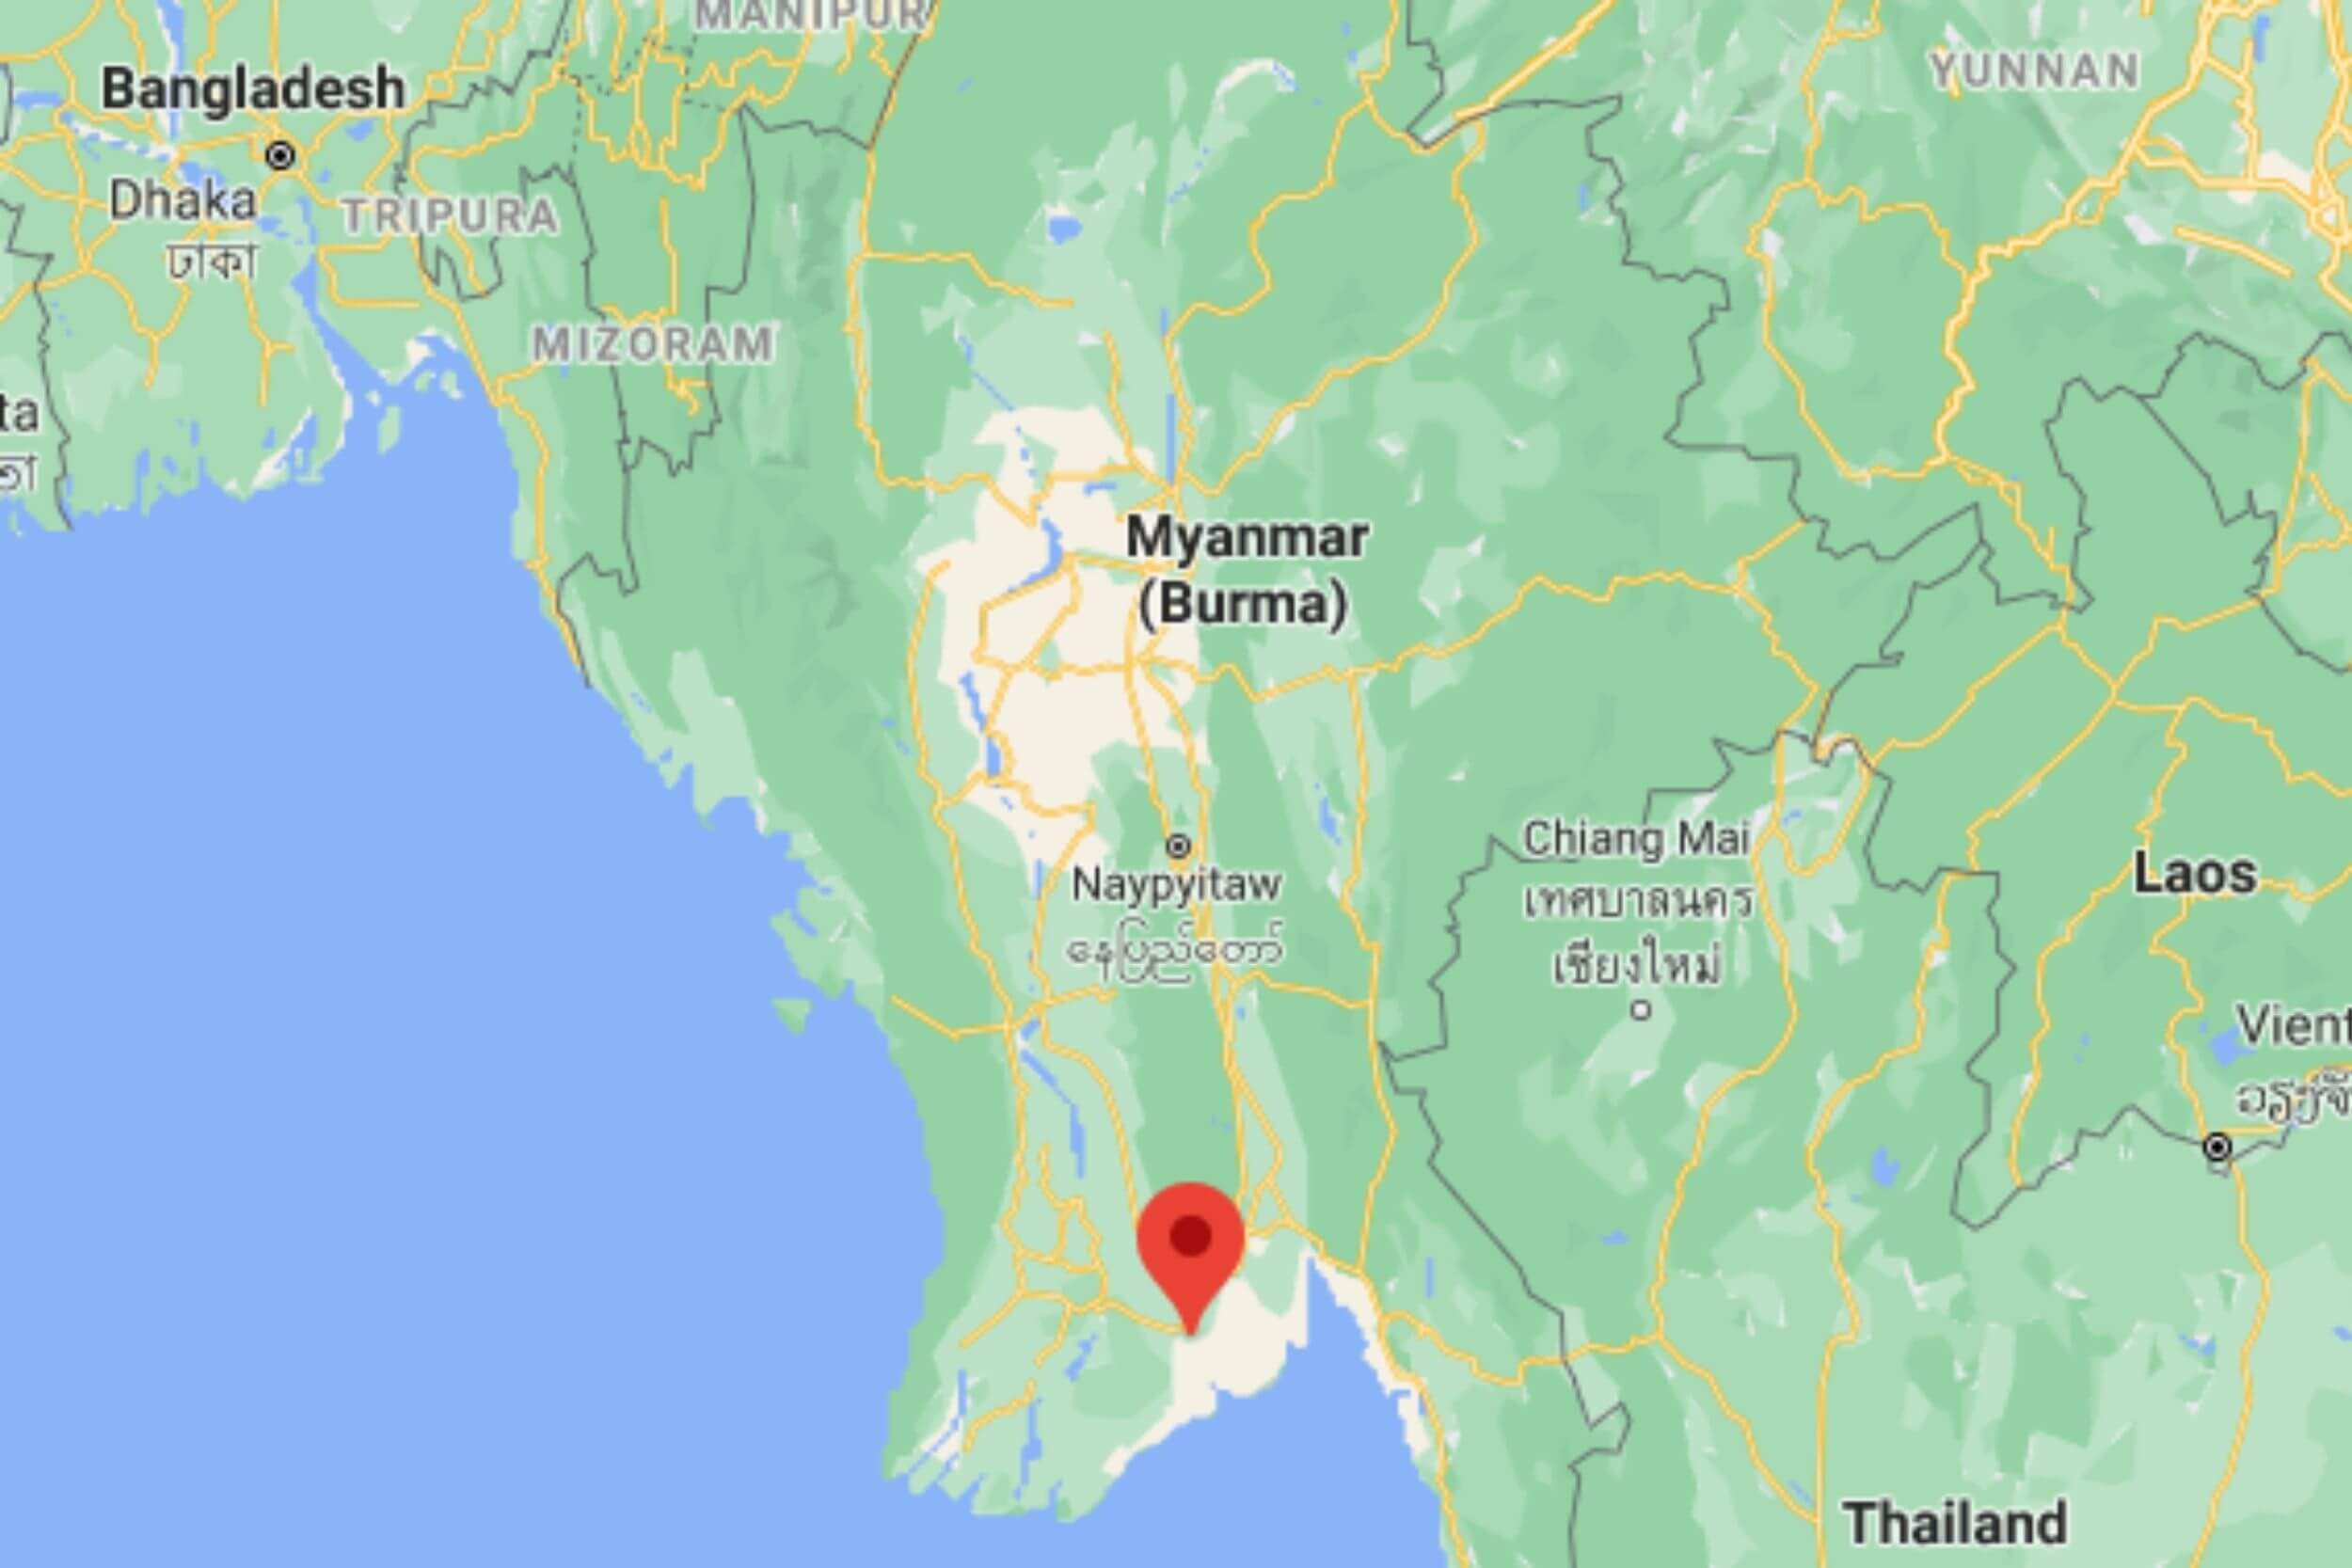 Map of Yangon, Myanmar